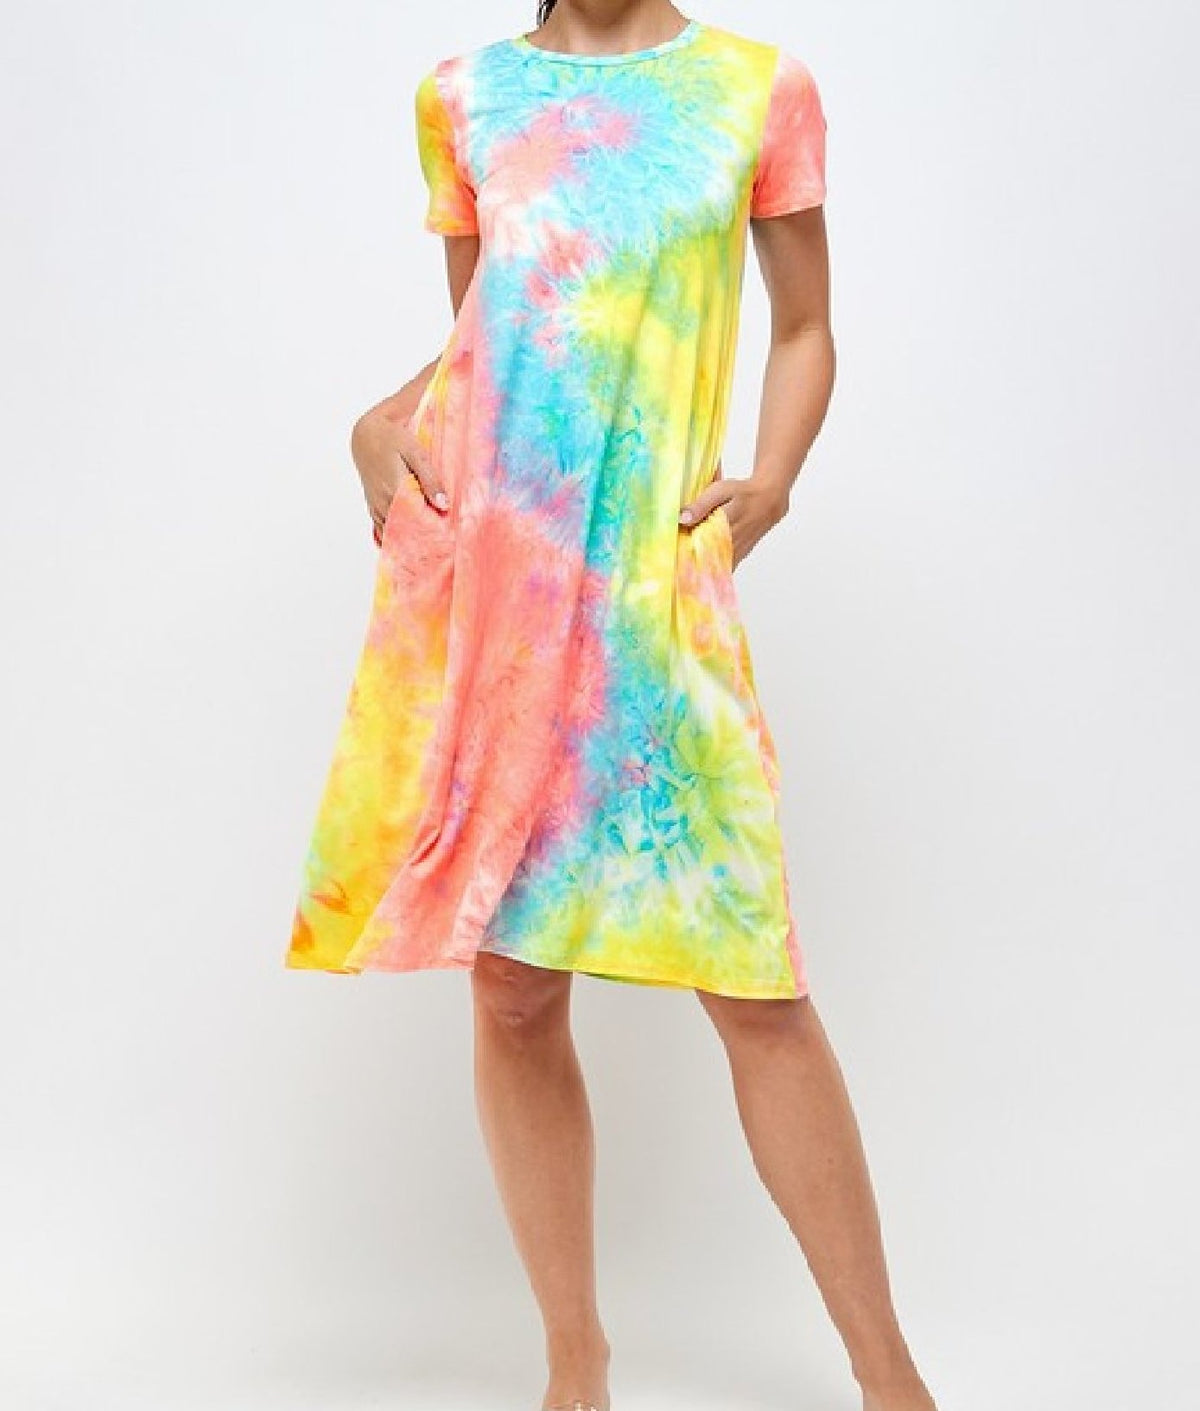 Velvety Soft Plus Size Tie Dye Dress